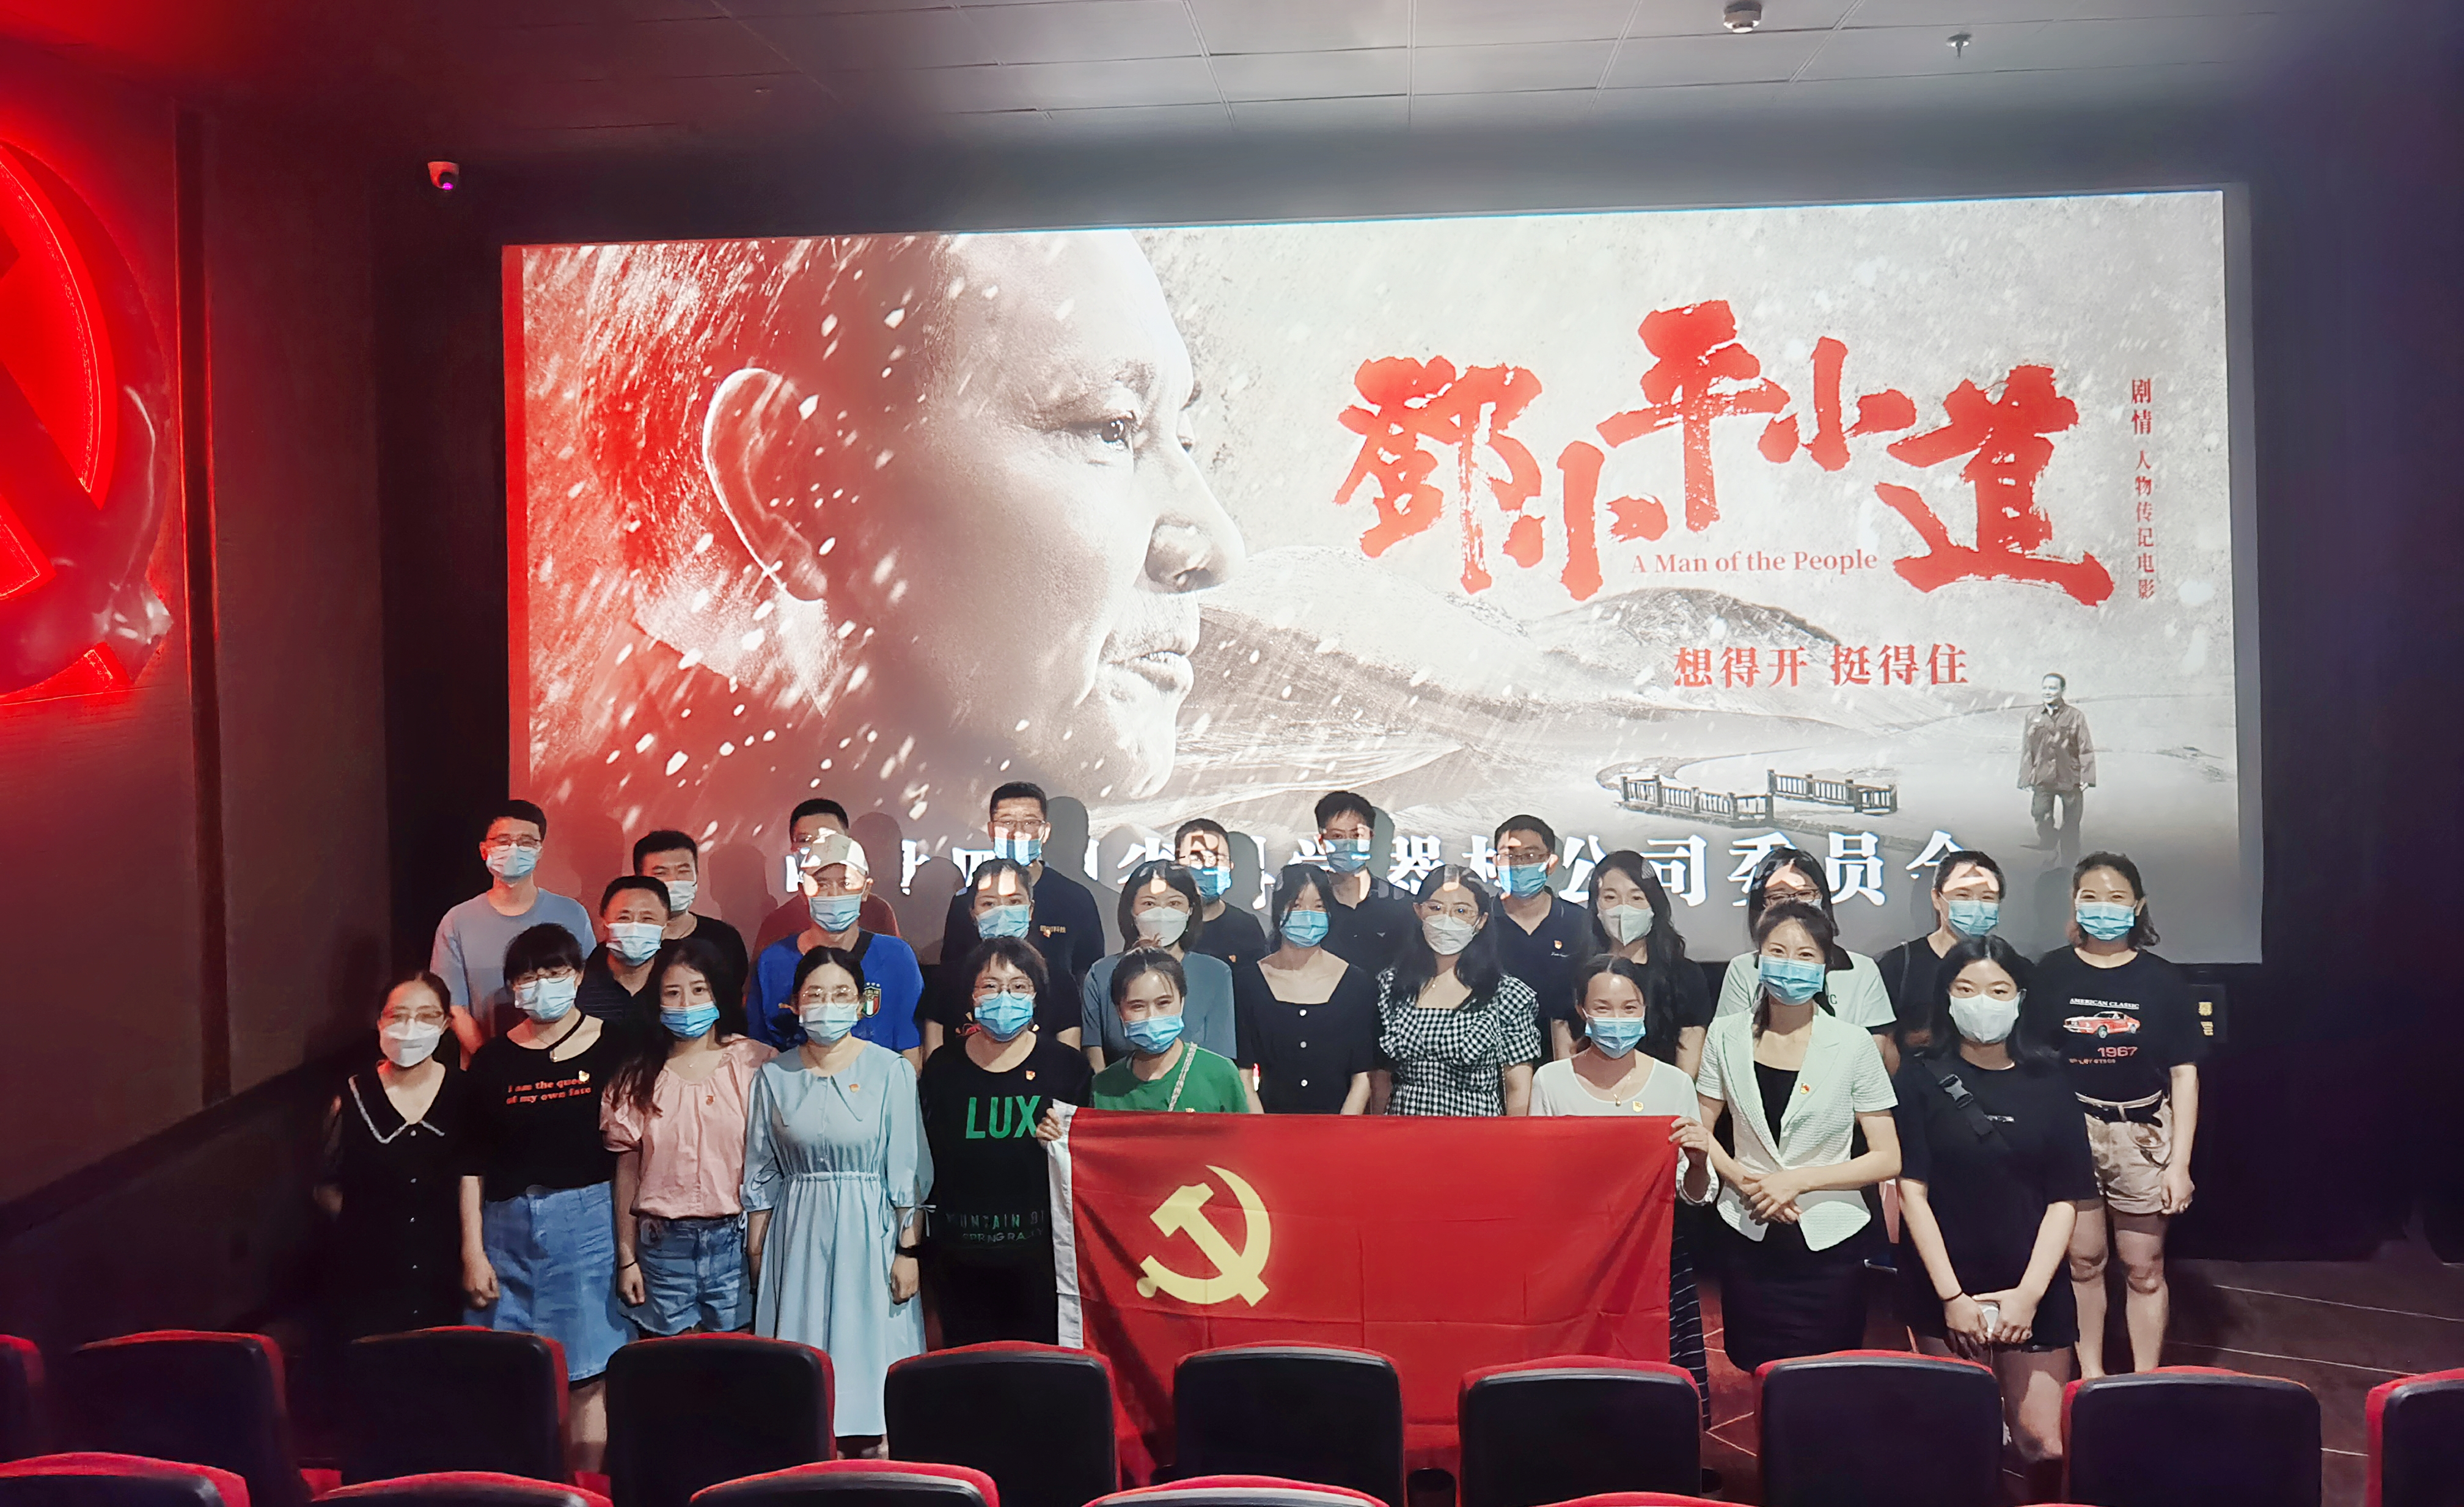 器材公司党委组织开展《邓小平小道》 主题红色电影党课活动